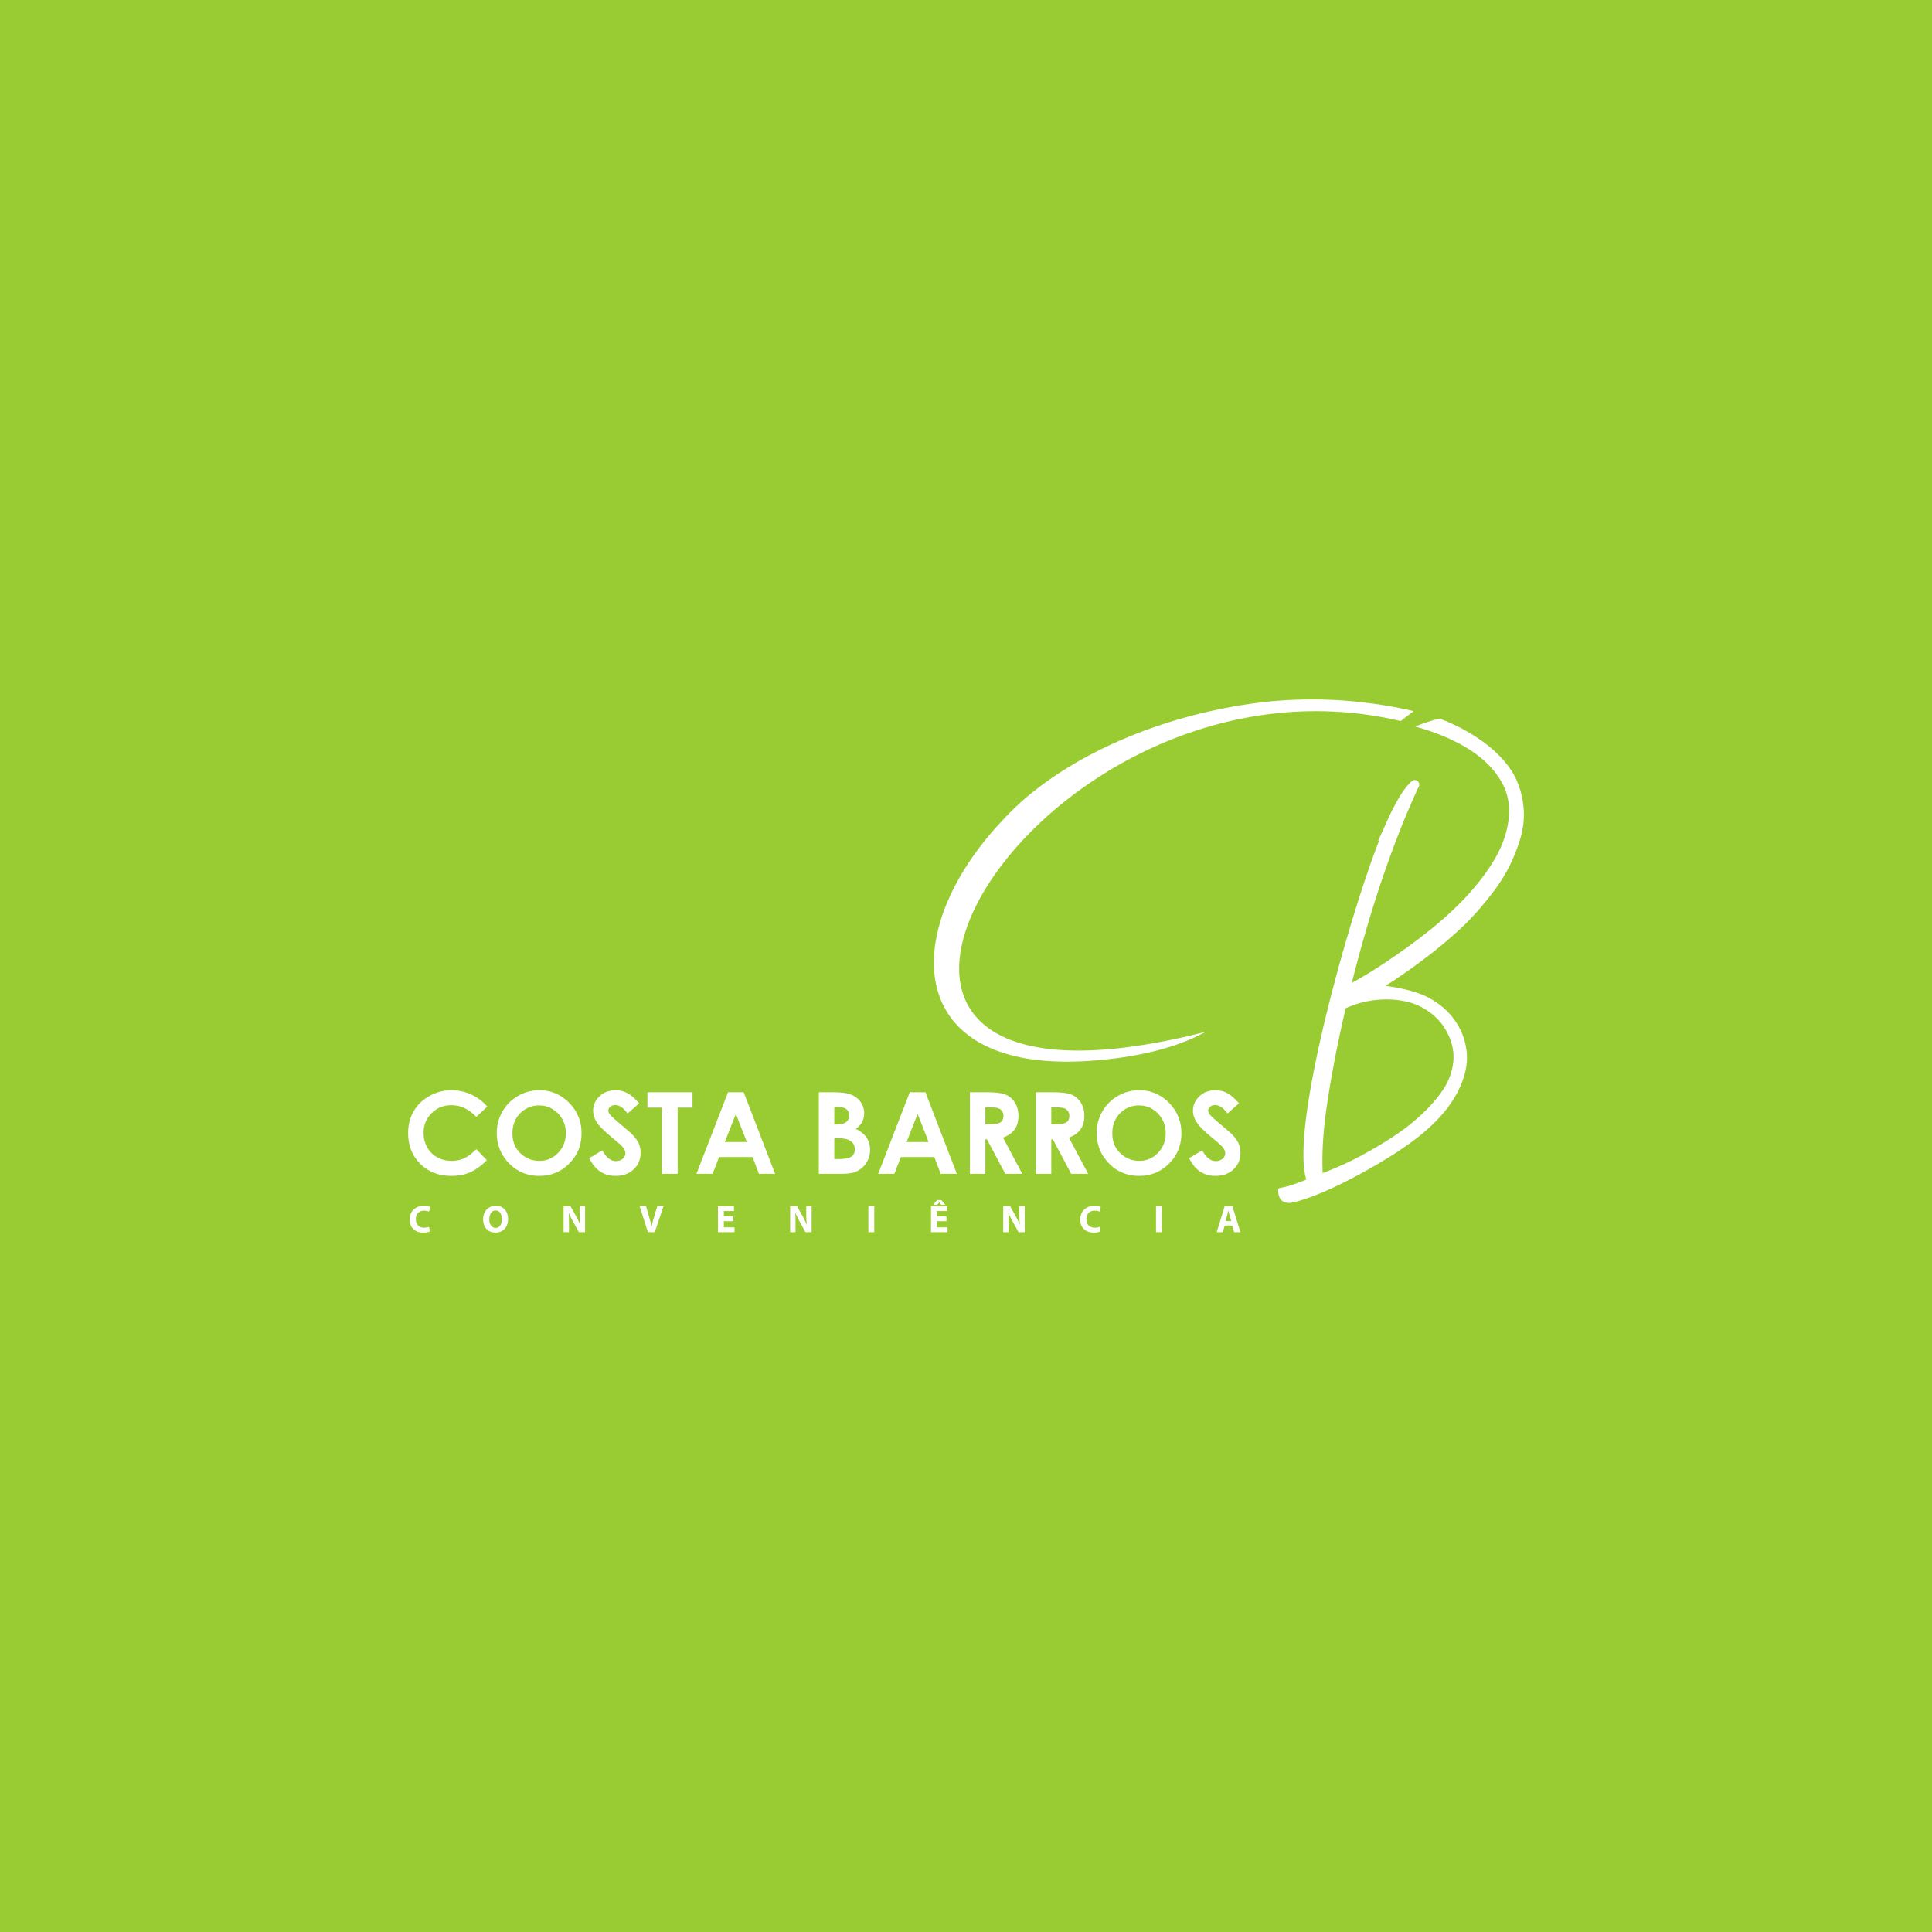 Costa Barros Conveniência